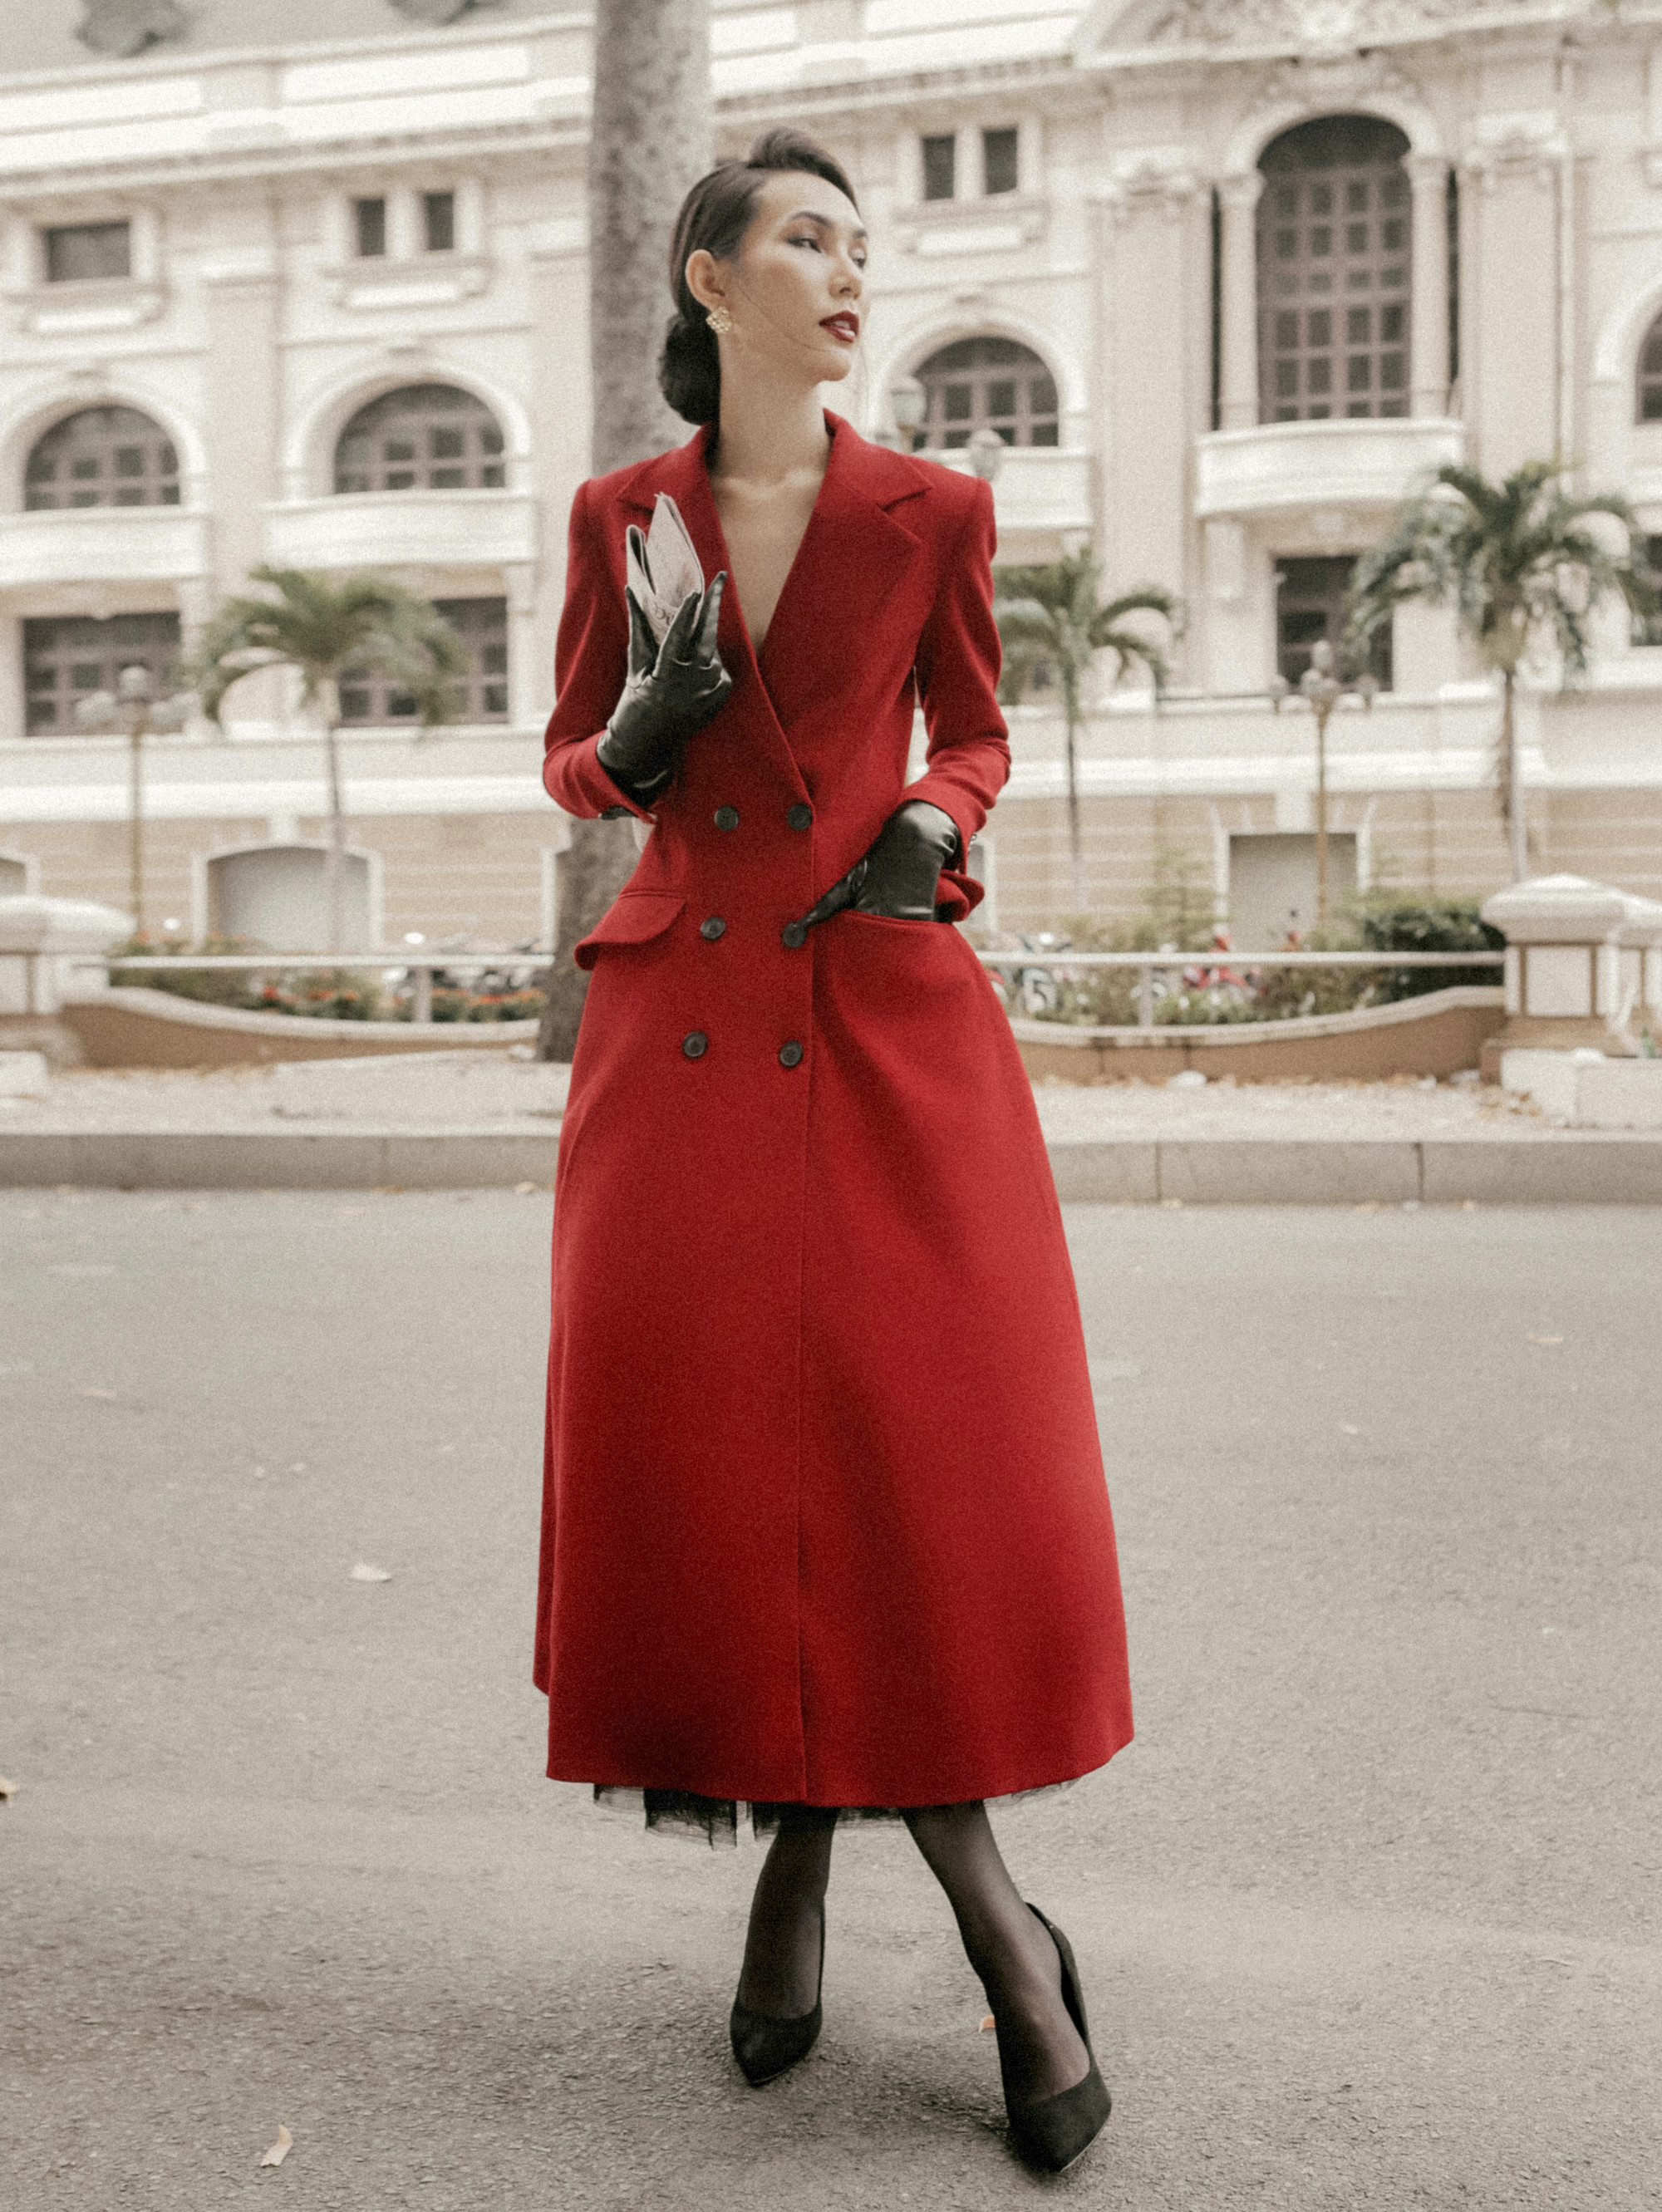 Ngập tràn sắc đỏ mùa Tết với nhà thiết kế Nguyễn Minh Công - ảnh 5